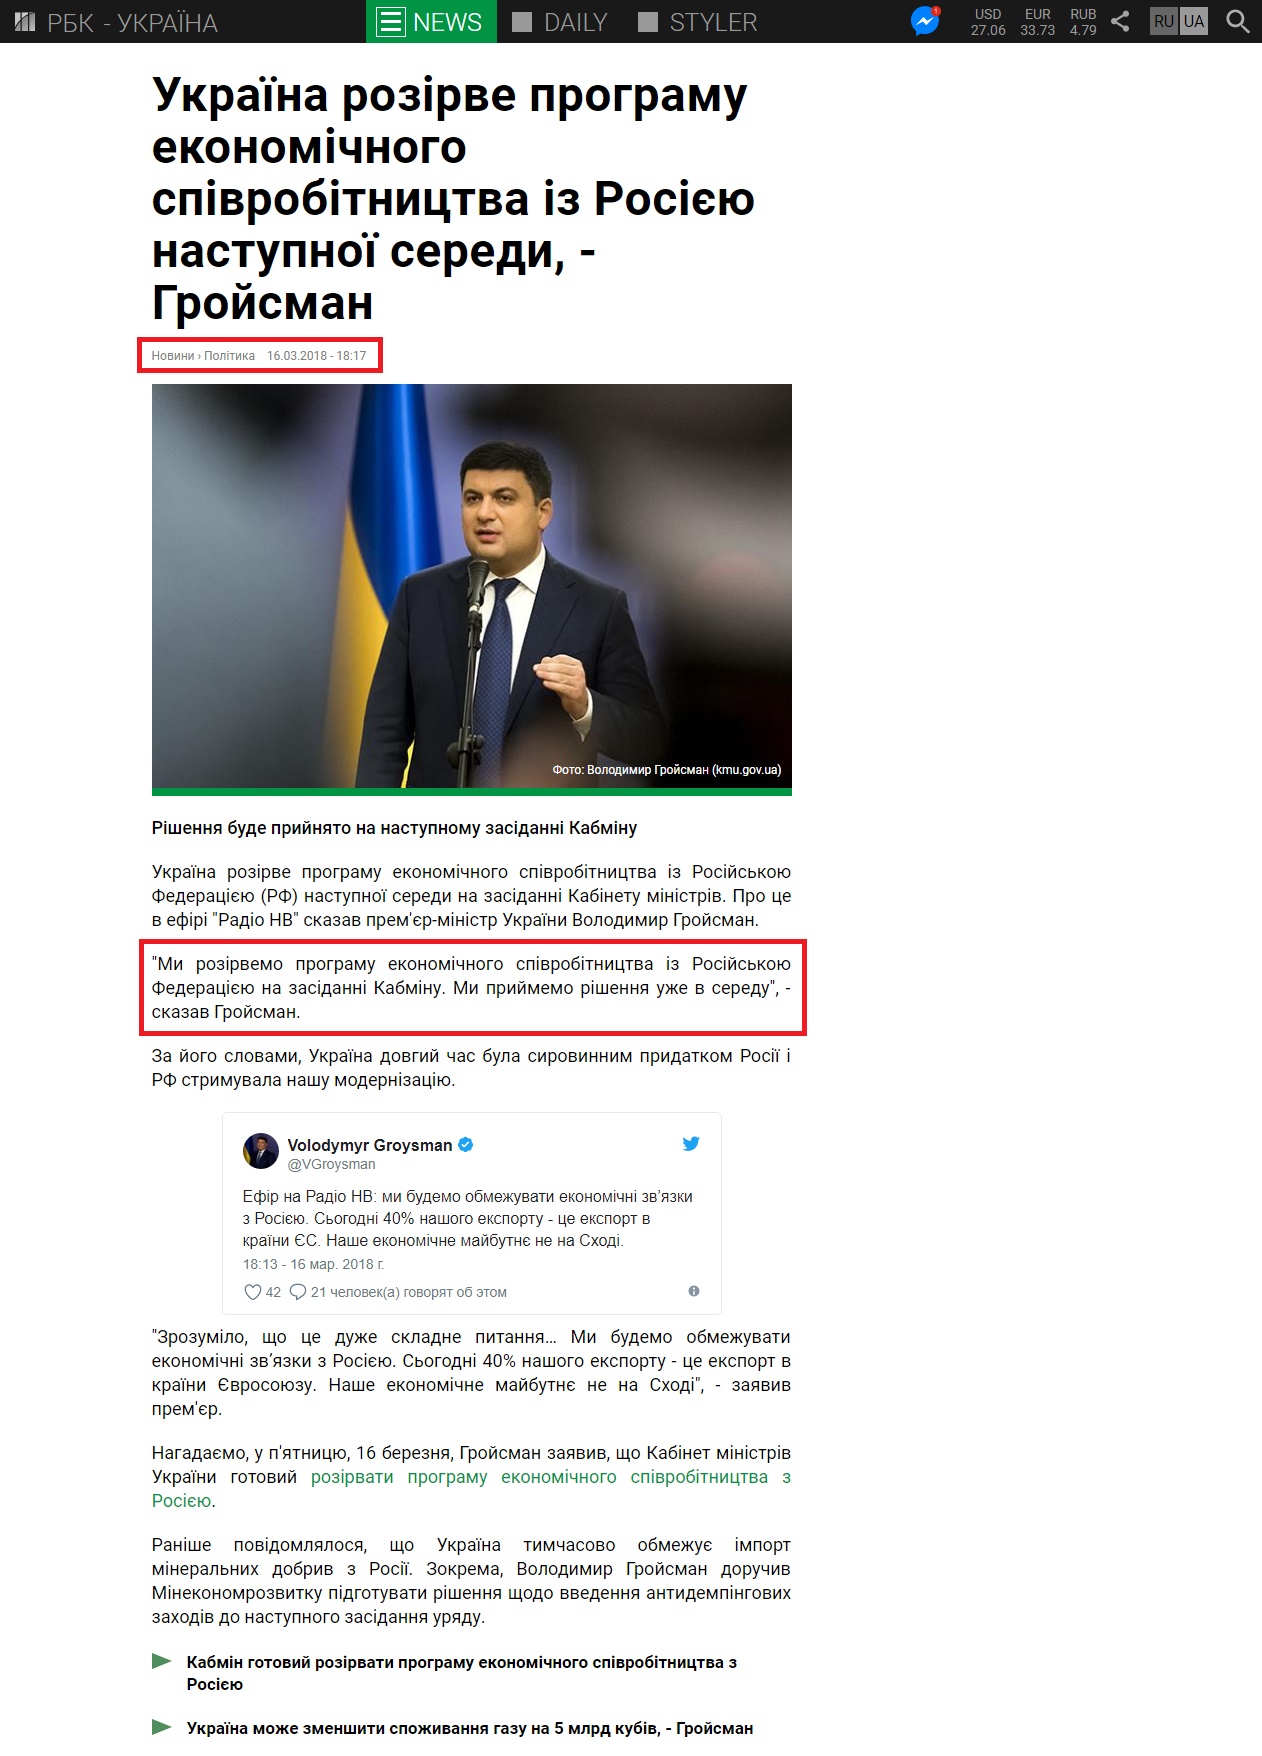 https://www.rbc.ua/ukr/news/ukraina-rastorgnet-programmu-ekonomicheskogo-1521217072.html